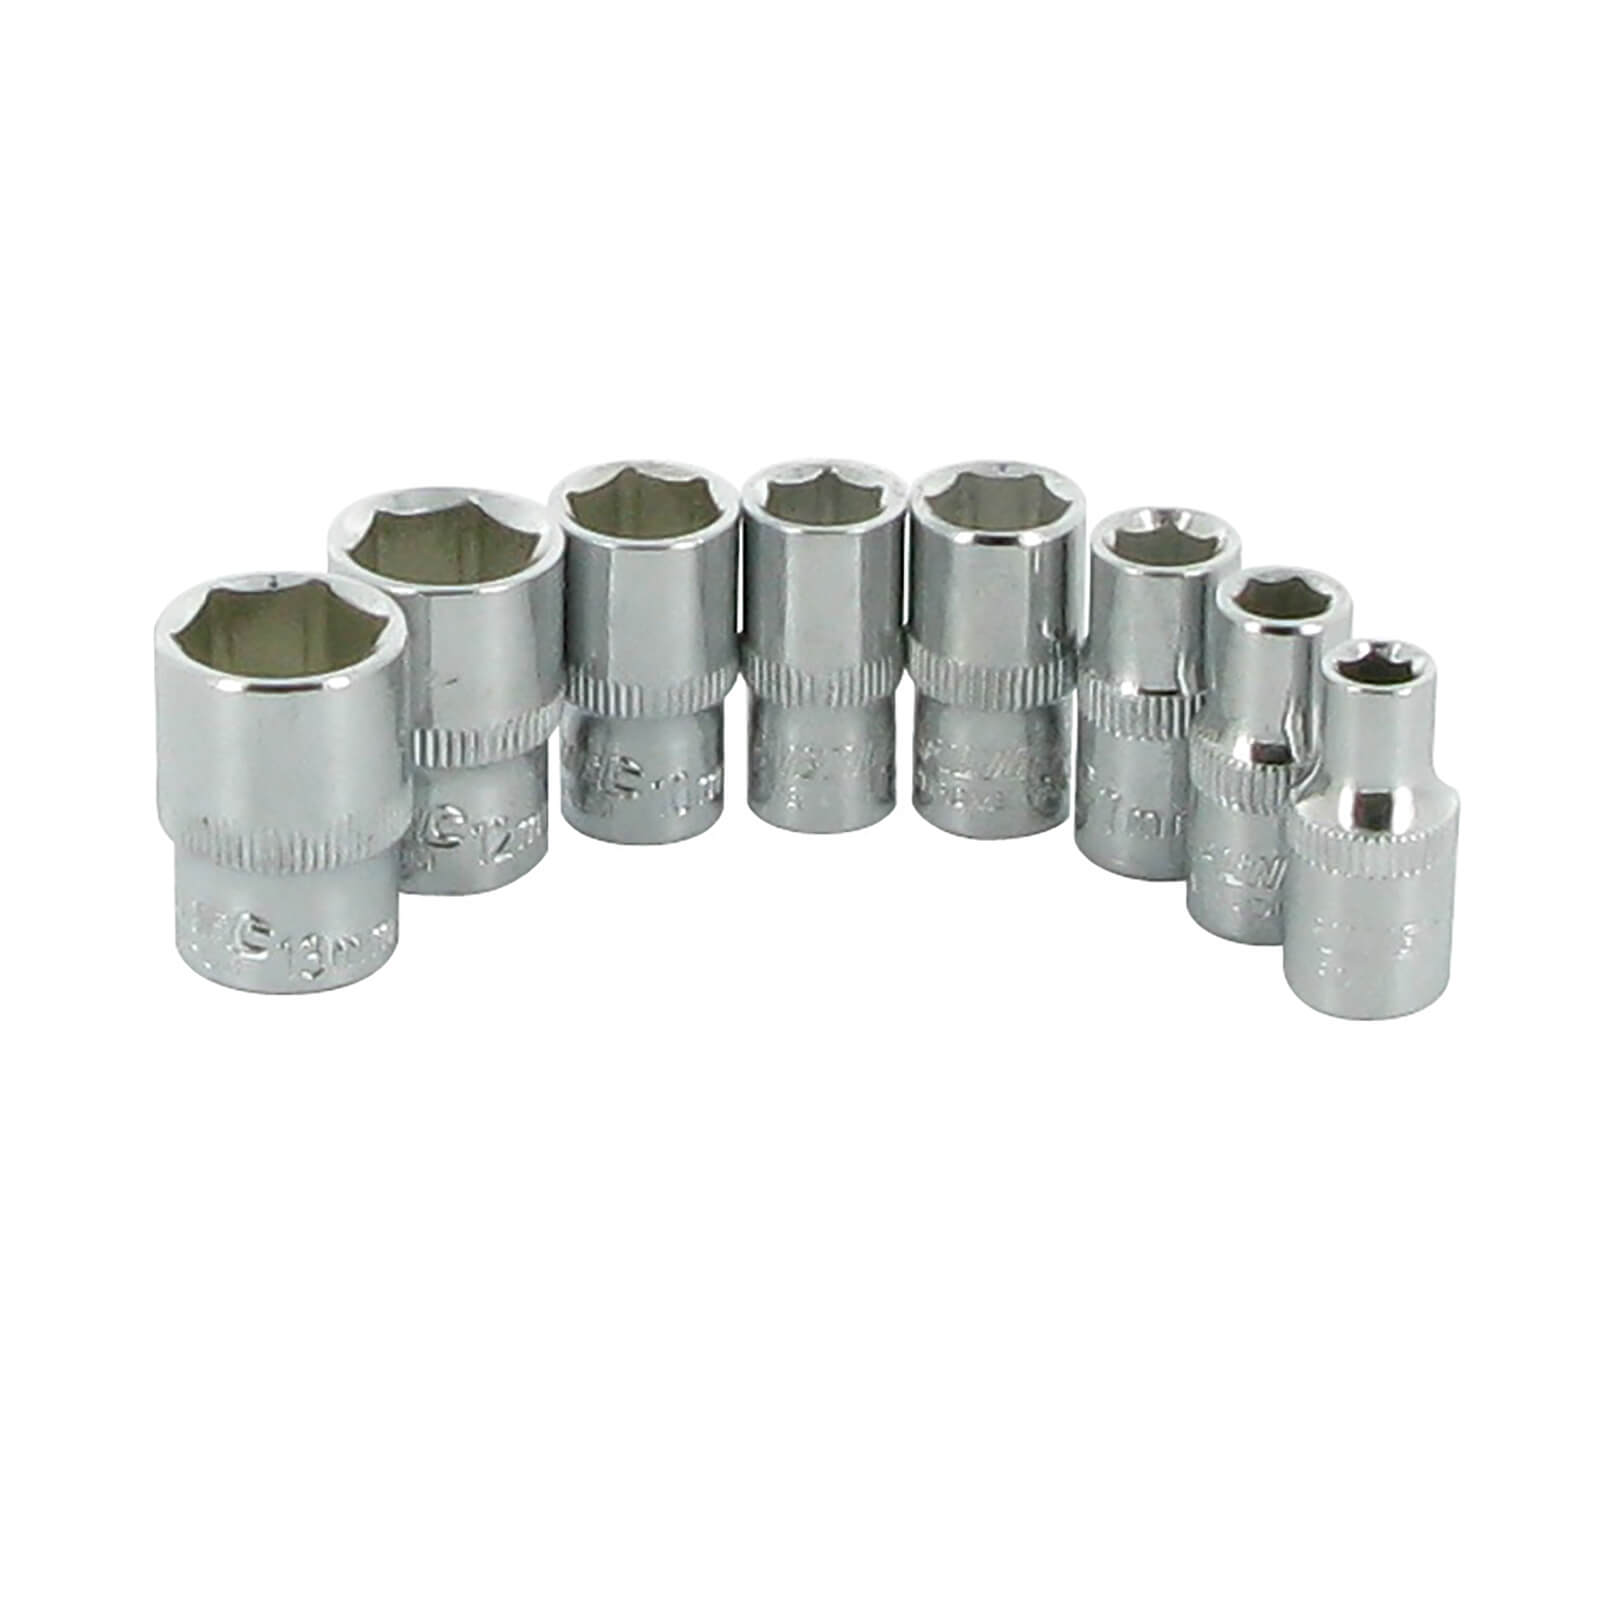 Silverline 8 Piece Socket Set 1/4 6 Point Metric - 5-13mm